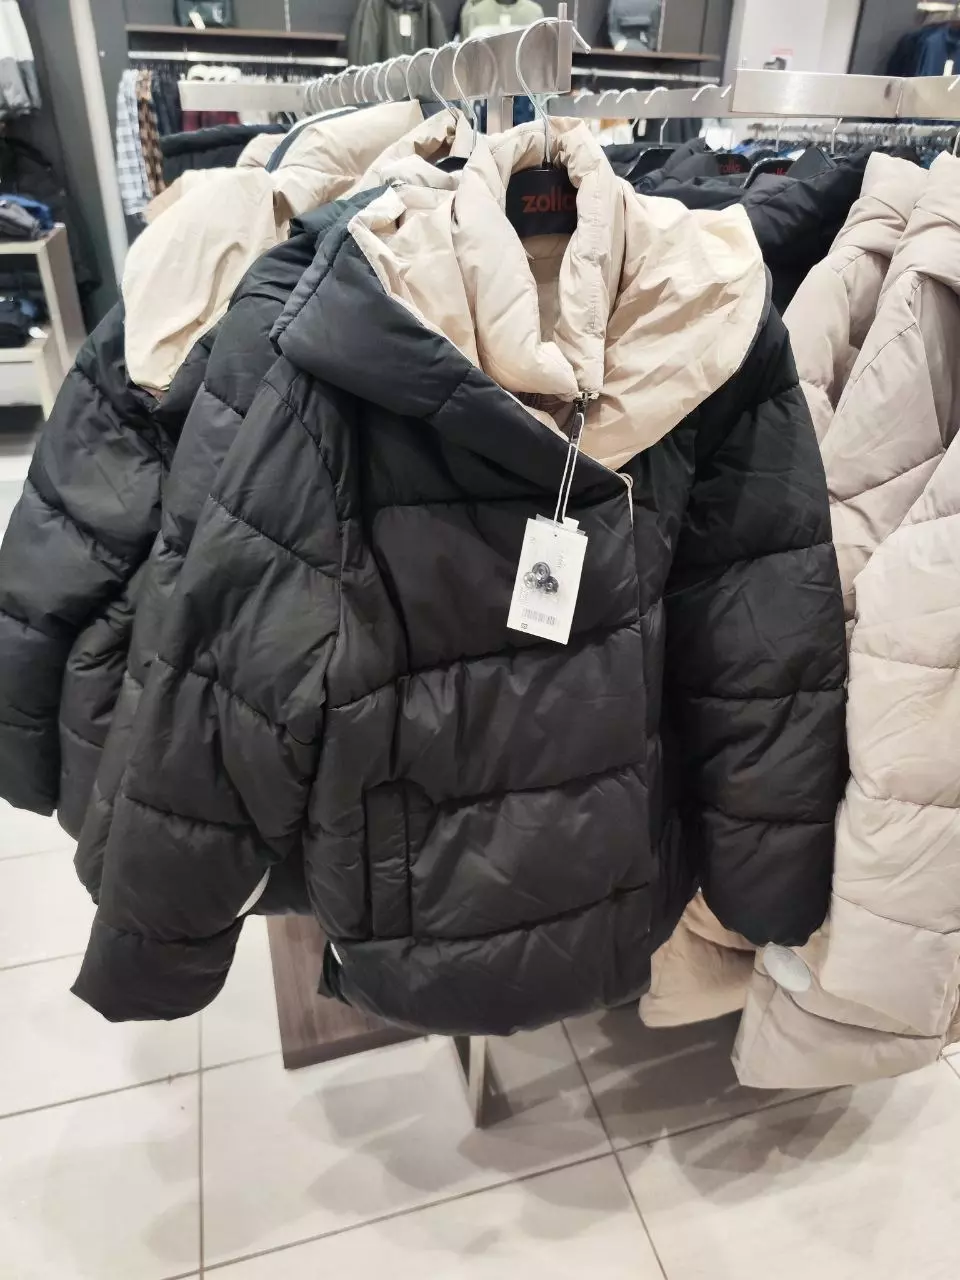 Ассортимент курток в магазине Zolla